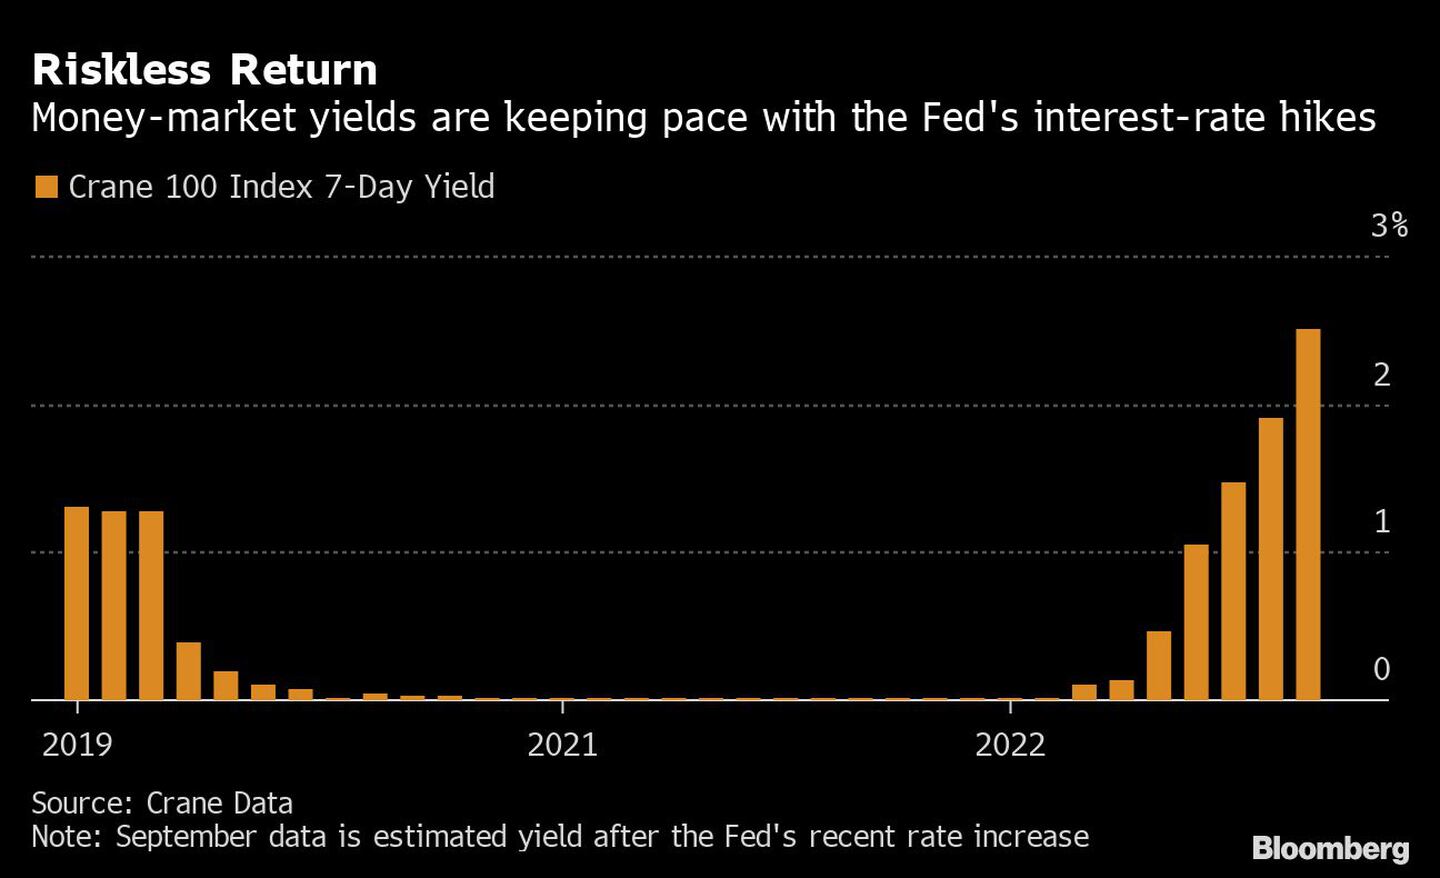 Los rendimientos del mercado monetario siguen el ritmo de las subidas de tipos de interés de la Feddfd